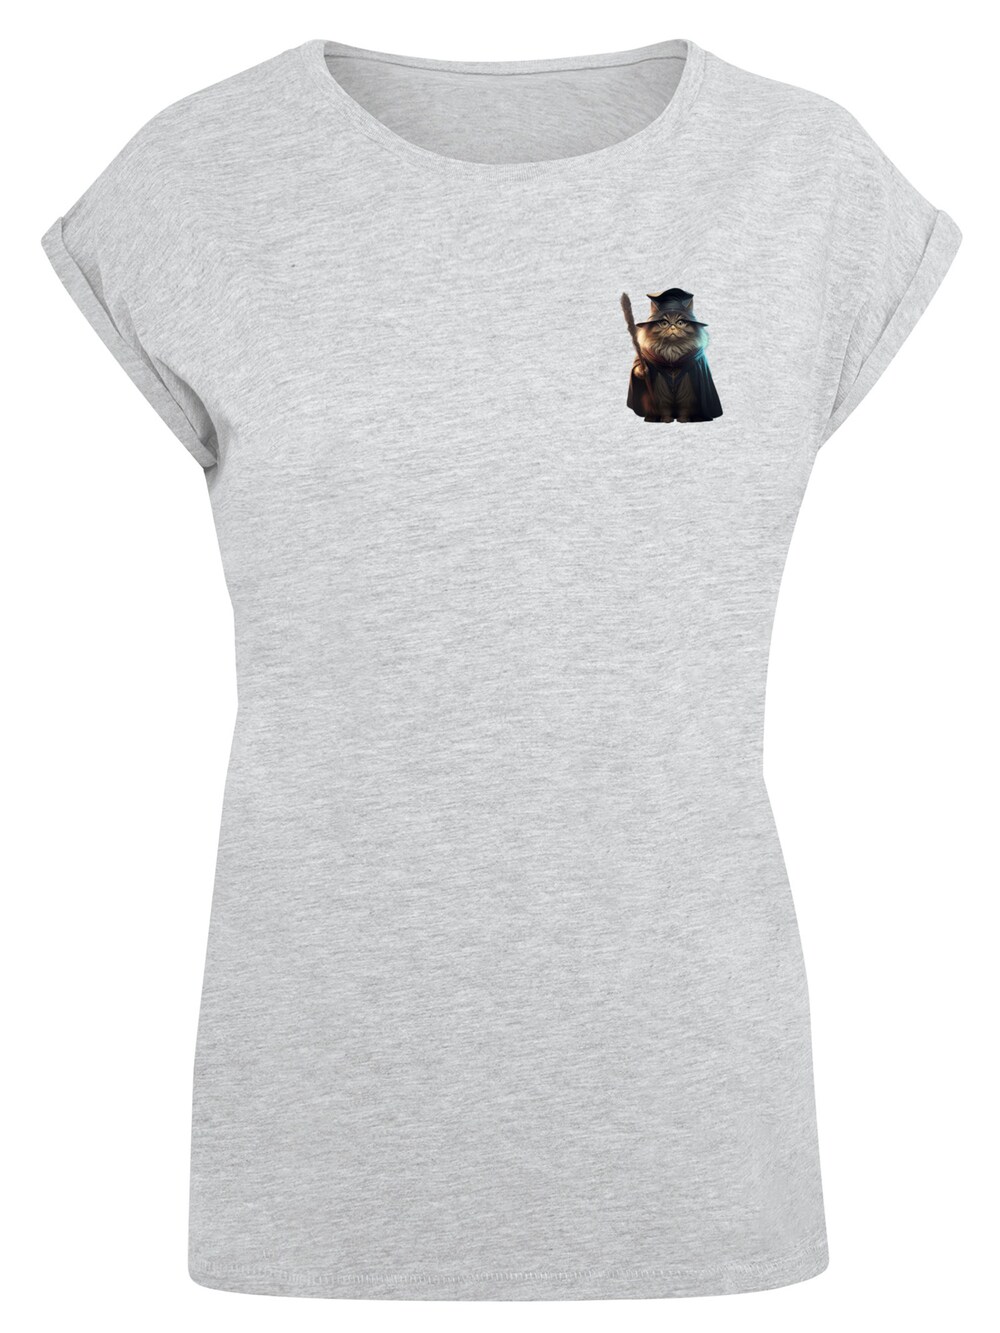 Рубашка F4Nt4Stic Wizard Cat, пестрый серый